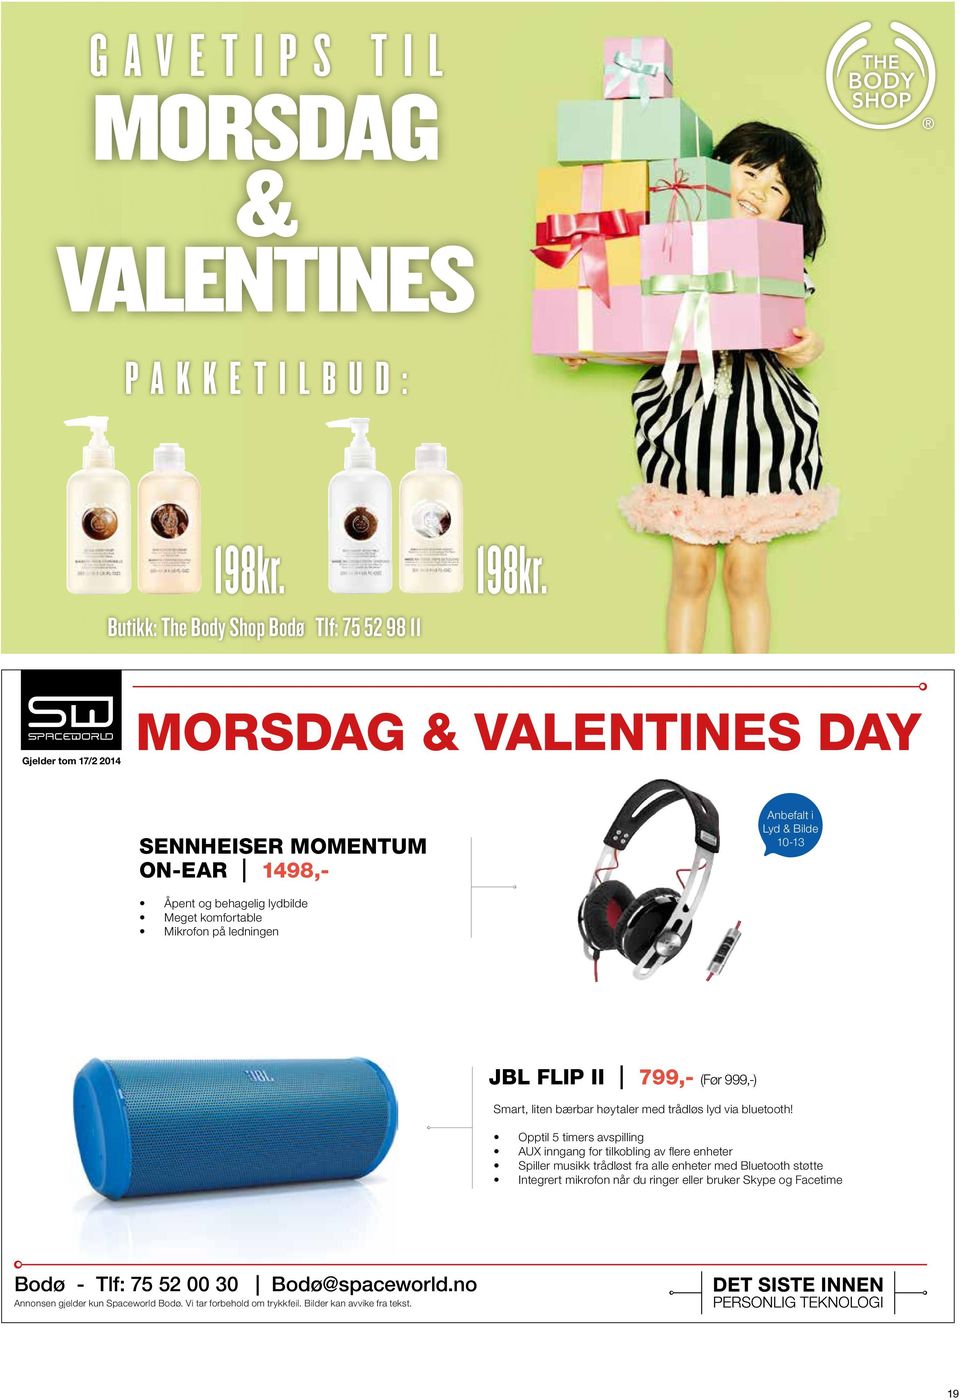 Butikk: The Body Shop Bodø Tlf: 75 52 98 11 Gjelder tom 17/2 2014 MorSdag & valentines day SennheiSer MoMentuM on-ear ı 1498,- Anbefalt i Lyd & Bilde 10-13 Åpent og behagelig lydbilde Meget